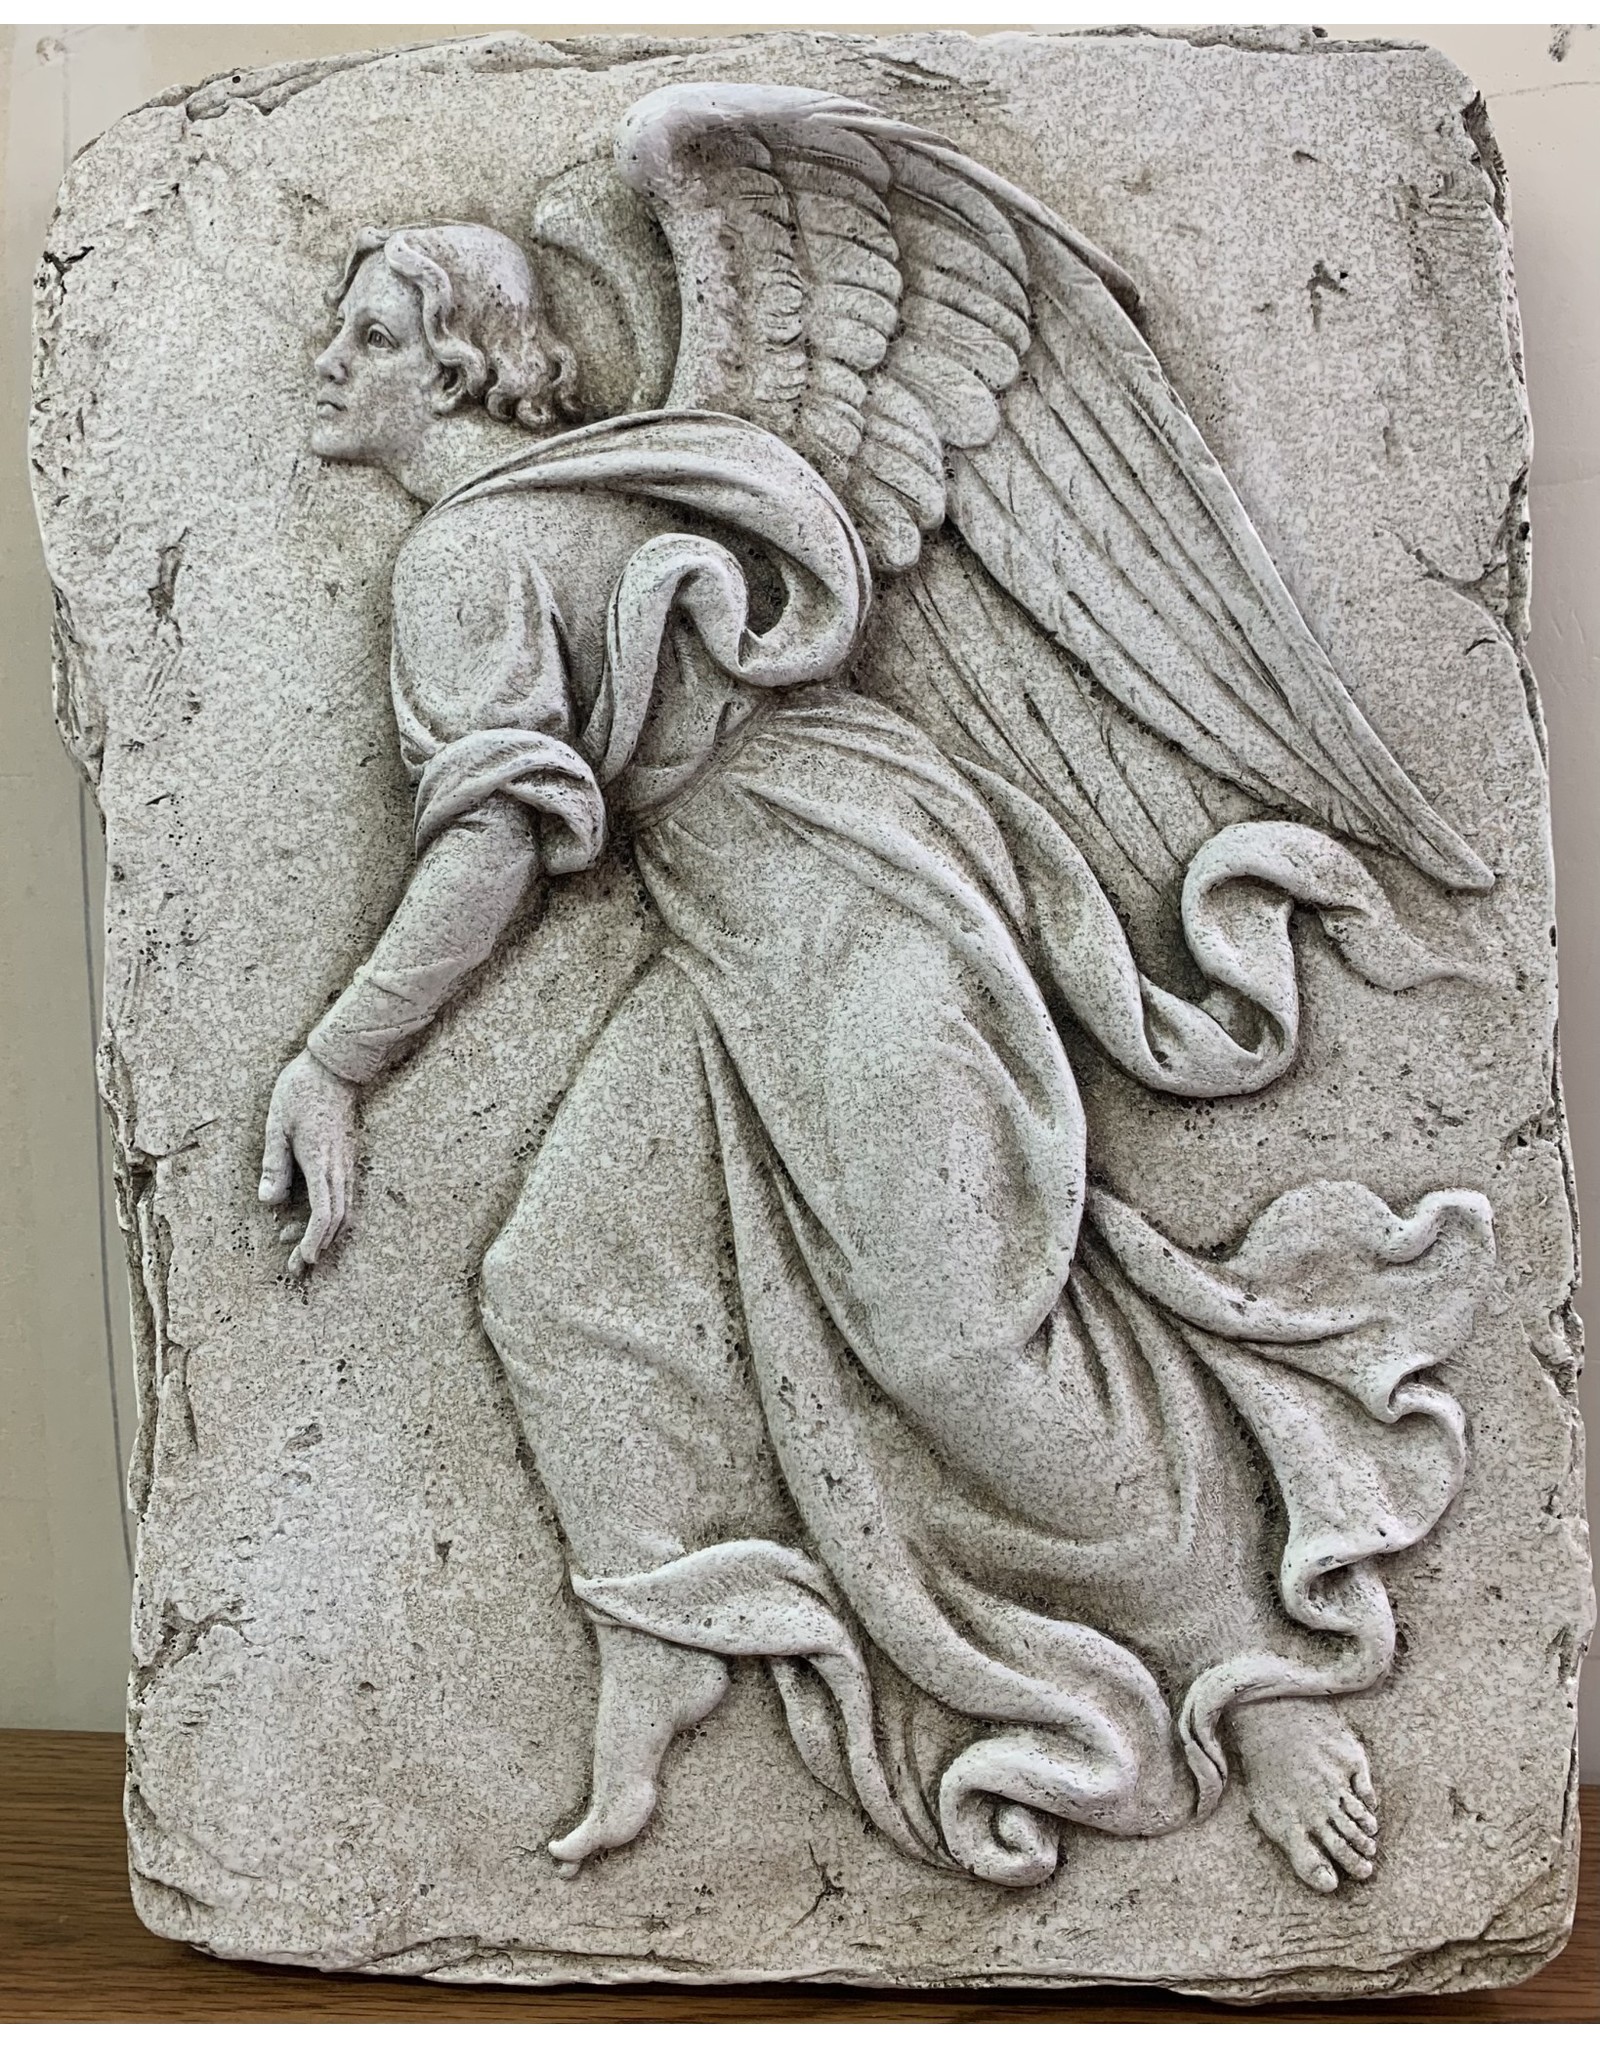 Roman Angel Plaque (Garden)